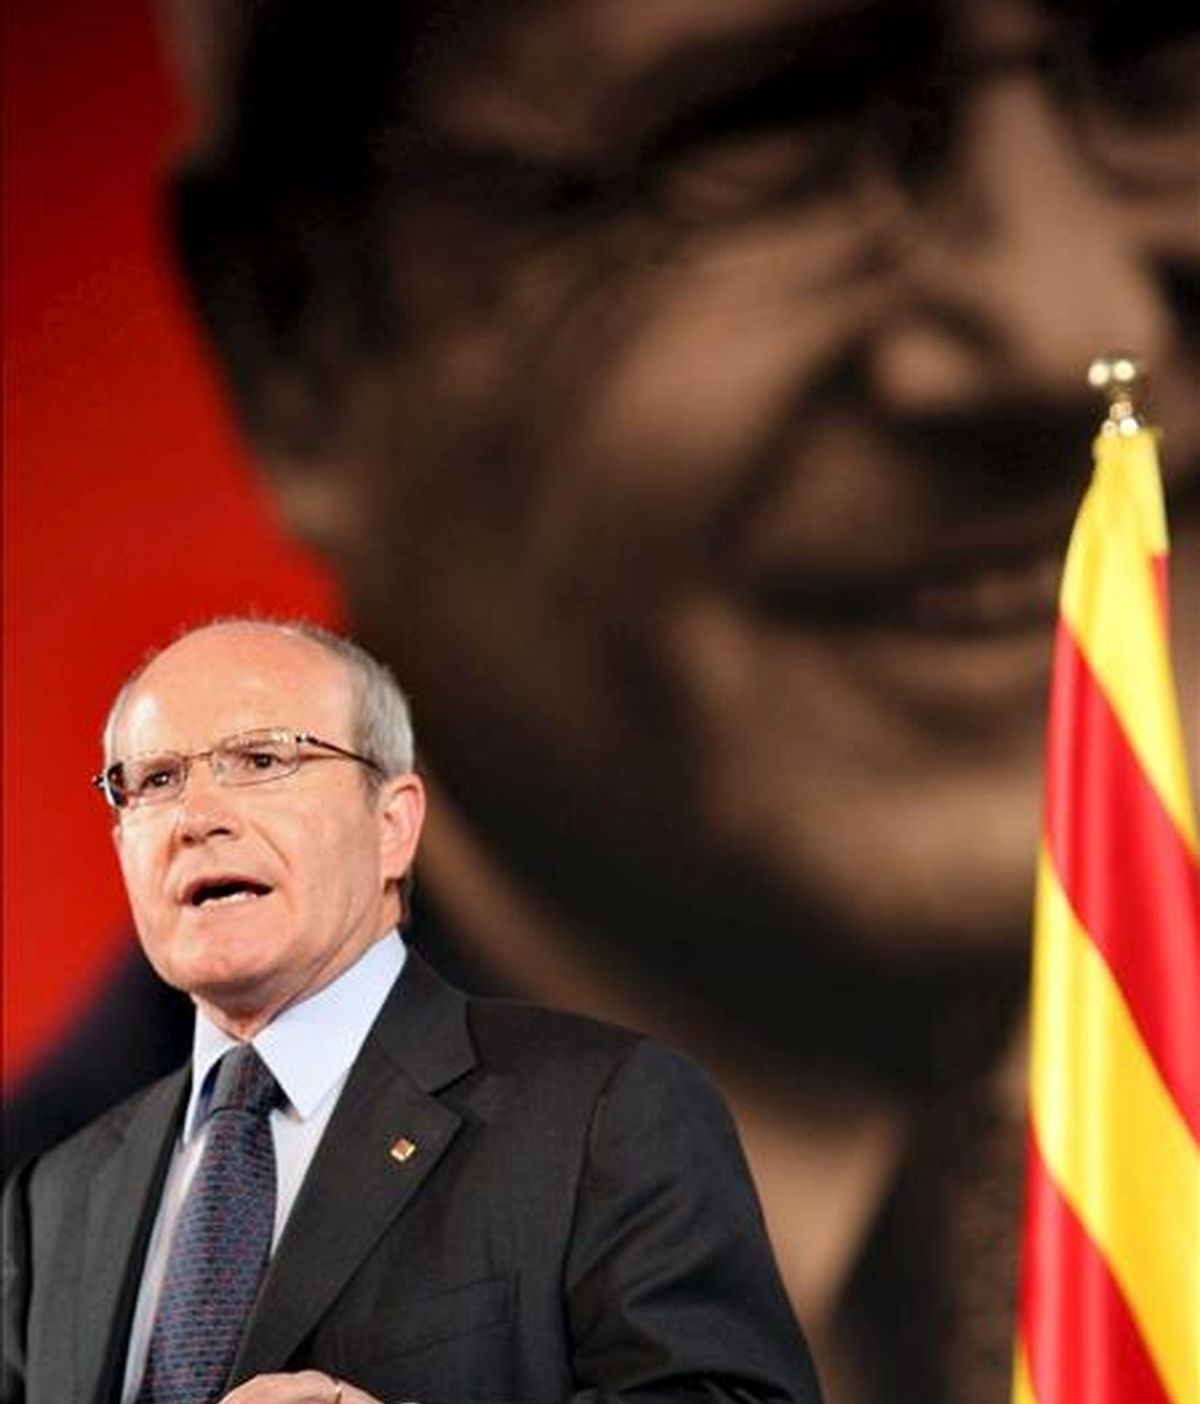 El presidente de la Generalitat y candidato a la reelección por los socialistas catalanes (PSC), José Montilla. EFE/Archivo